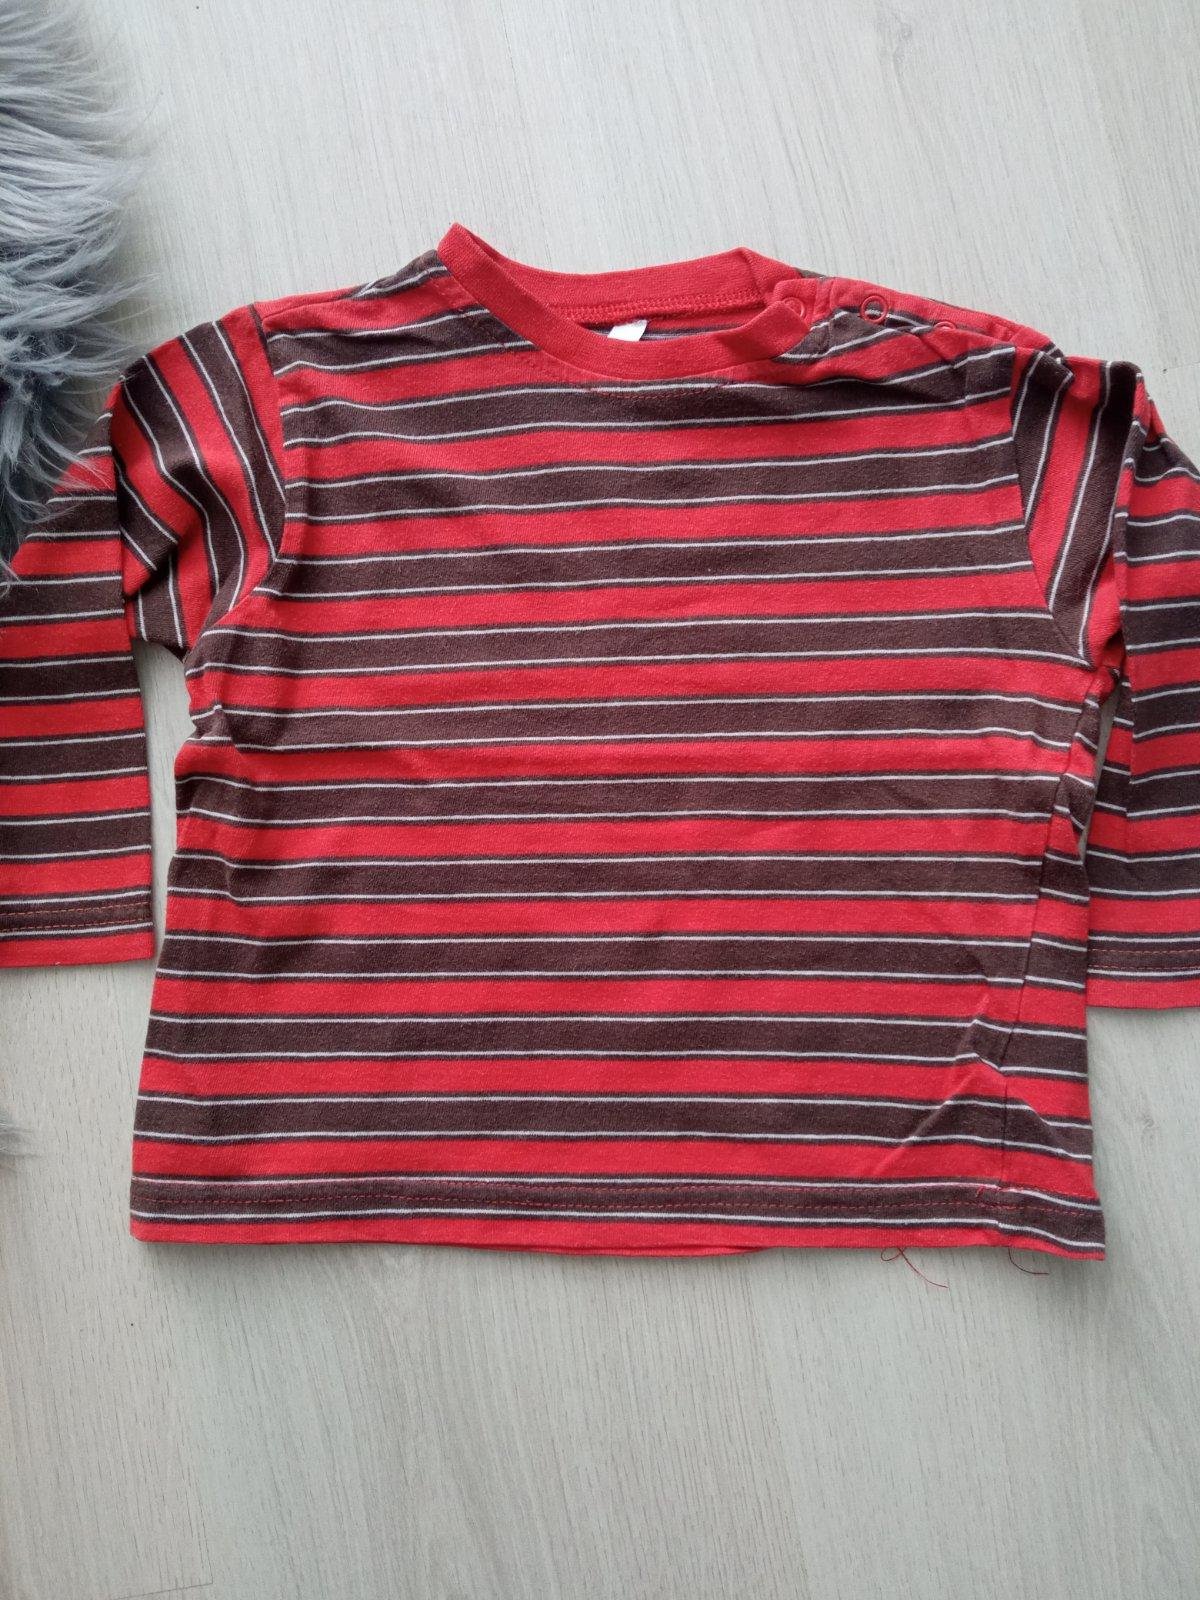 Červeno-bielo-hnedé pruhované tričko (86)